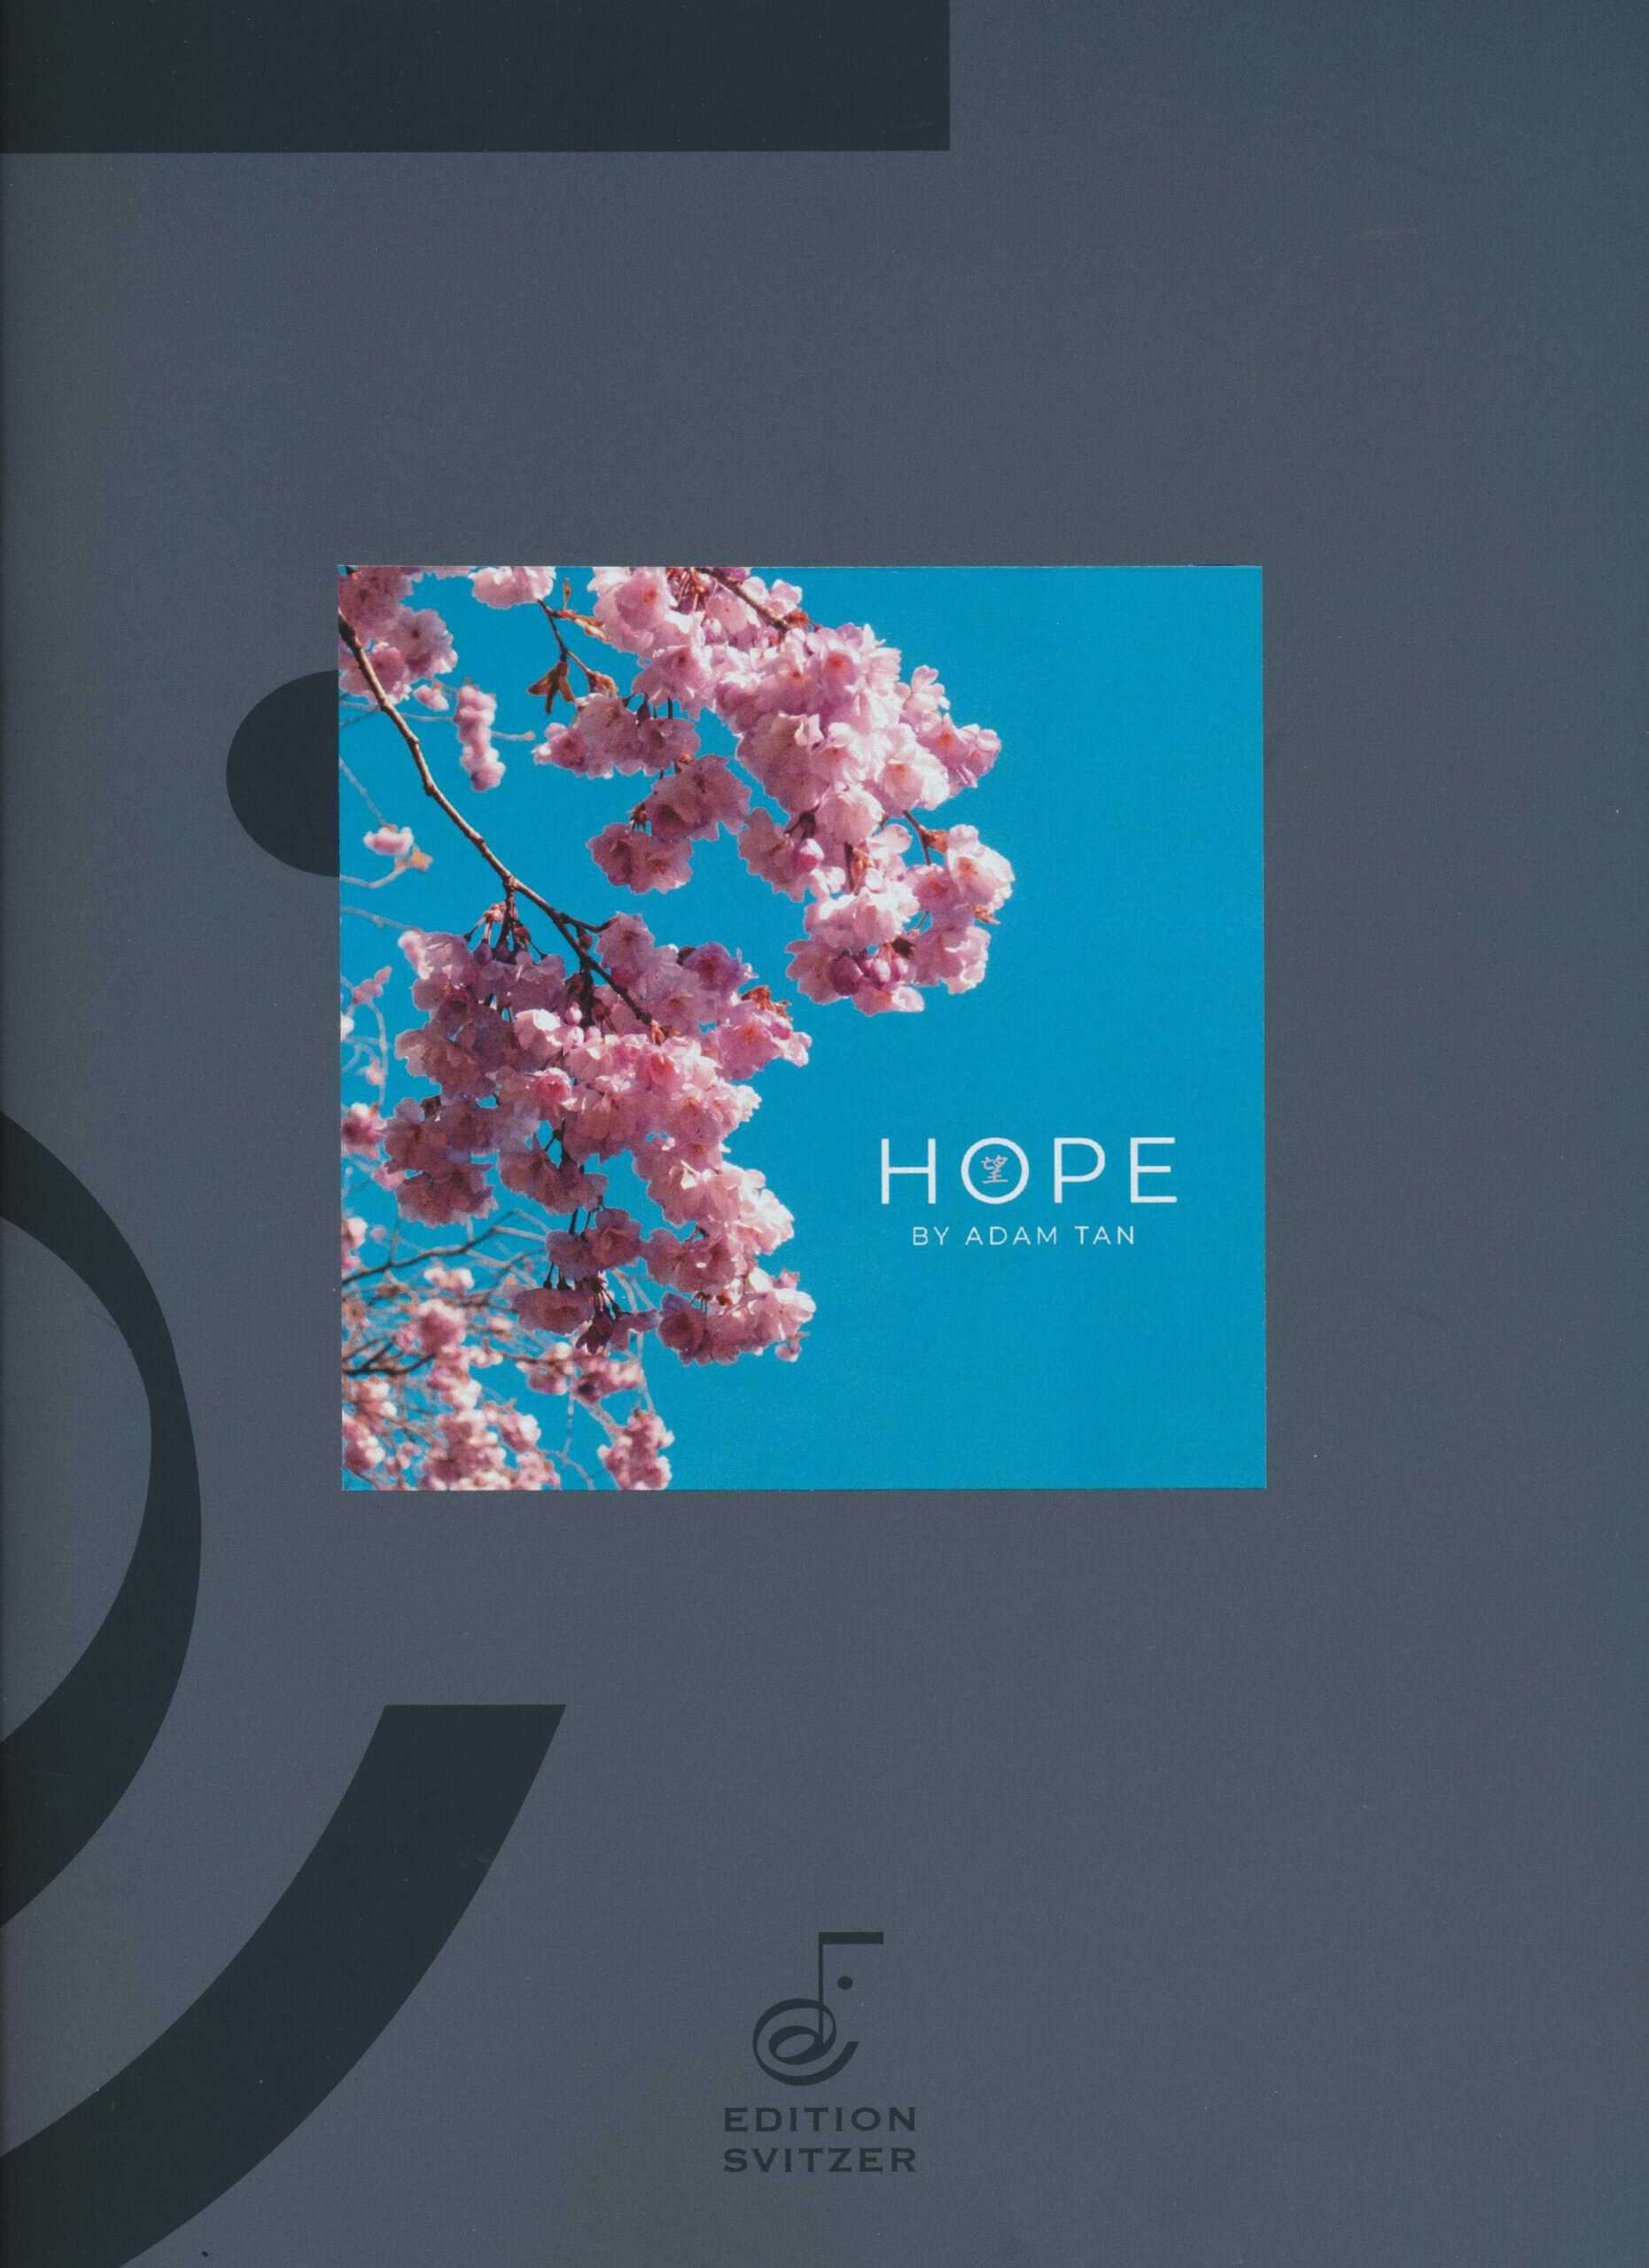 Hope by Adam Tan